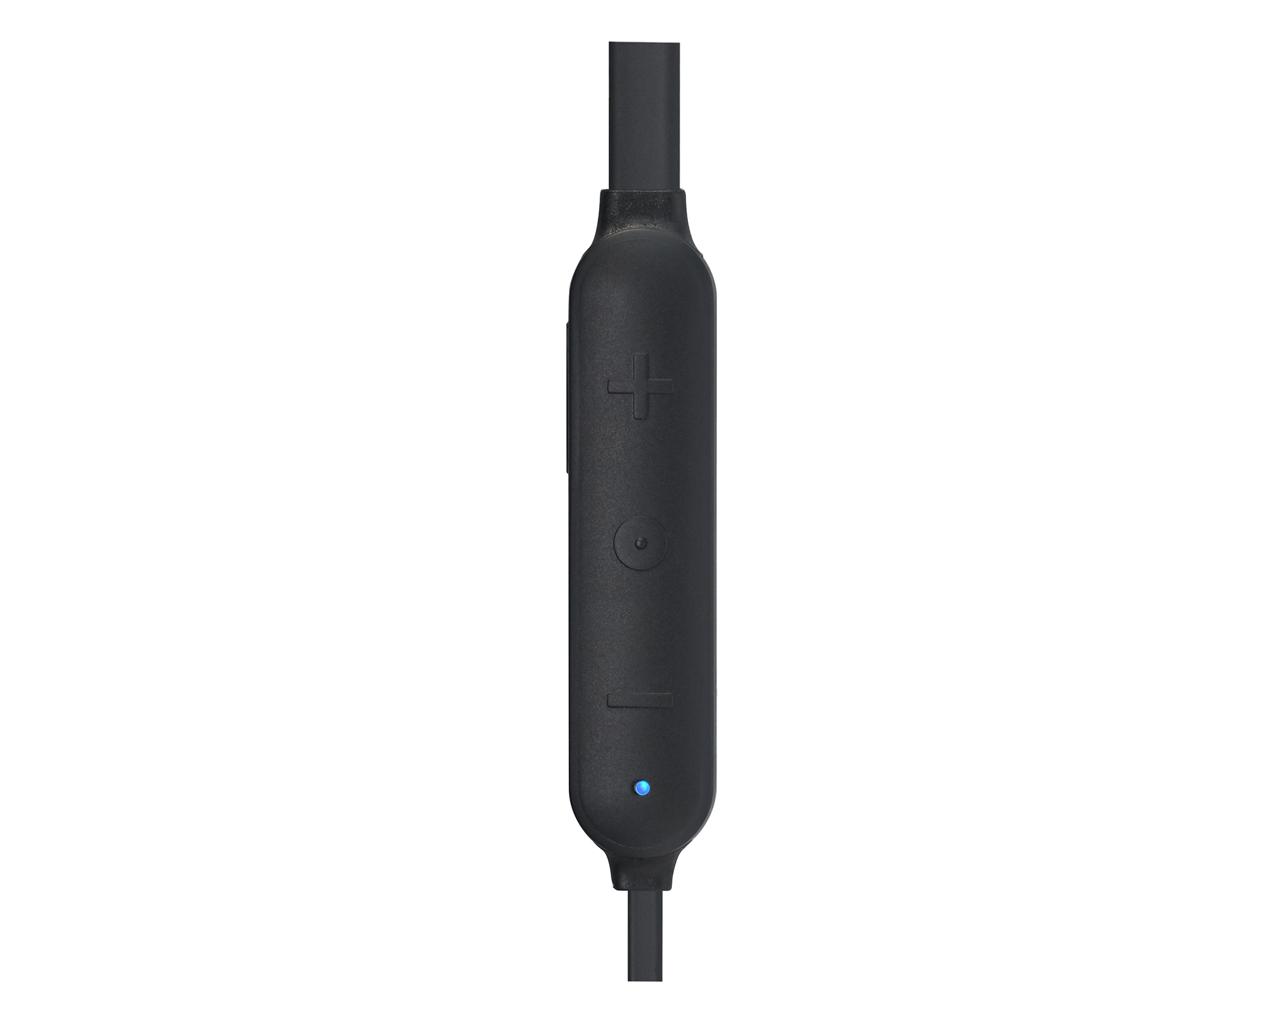 JVC HA-FX45BT-B Nyakpántos fülhallgató Bluetooth kapcsolattal, fekete ...